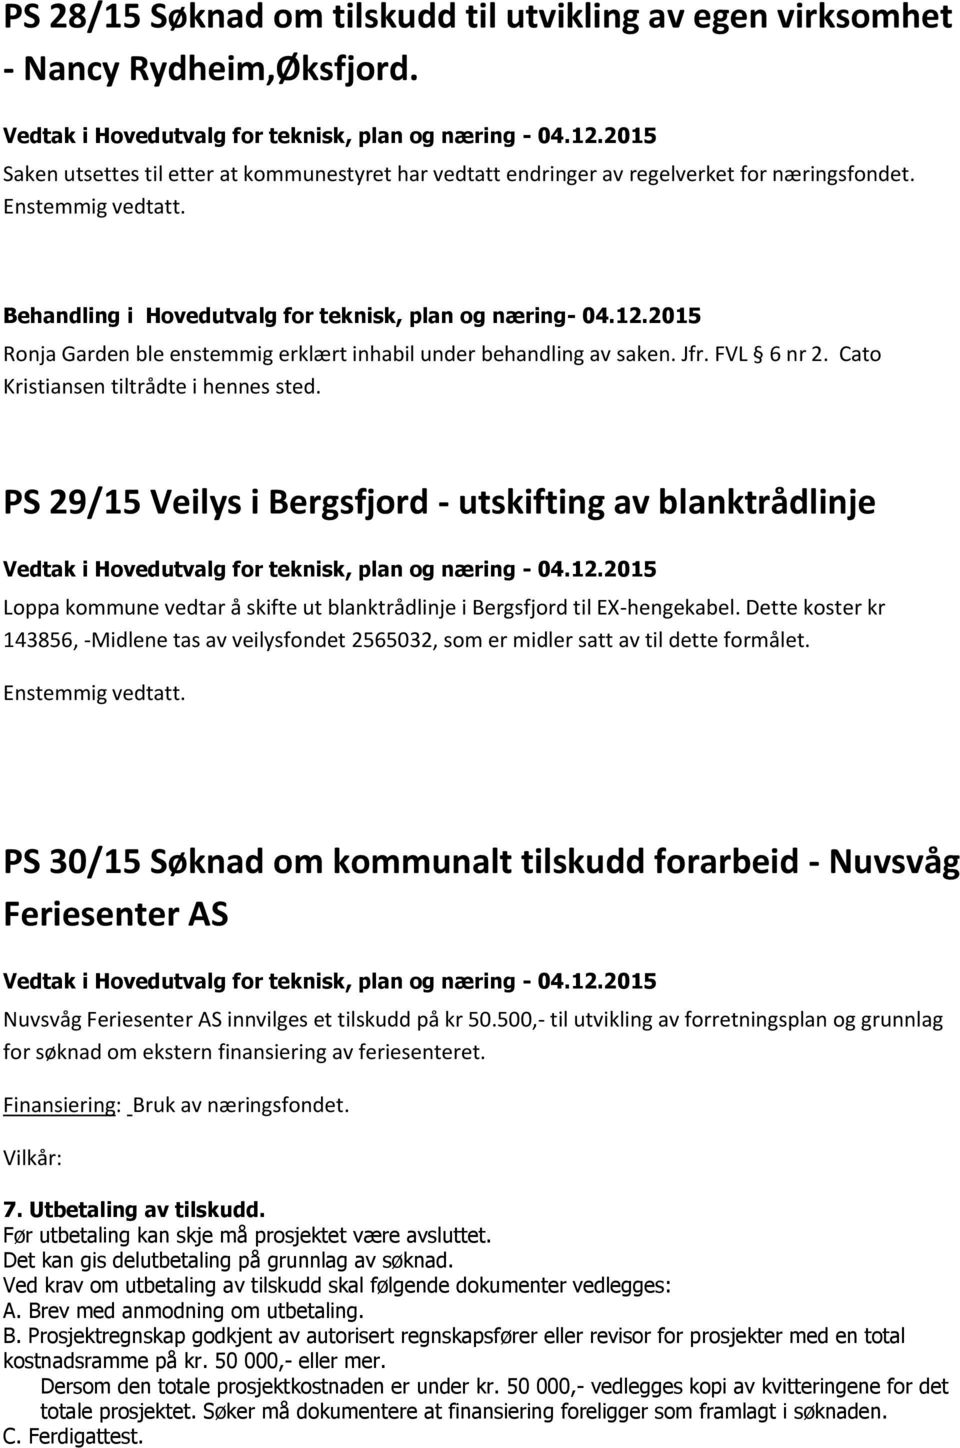 PS 29/15 Veilys i Bergsfjord - utskifting av blanktrådlinje Loppa kommune vedtar å skifte ut blanktrådlinje i Bergsfjord til EX-hengekabel.